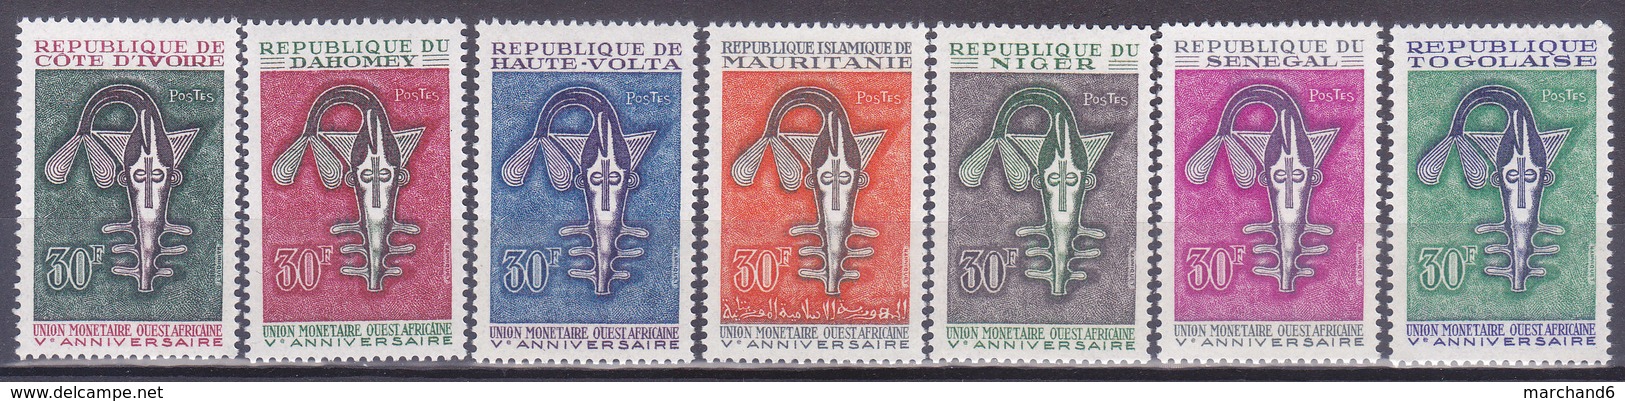 Colonies Francaises Serie 1967 5e Anniversaire De L Union Monétaire Ouest Africain  7 Valeurs Neuf** - Non Classés